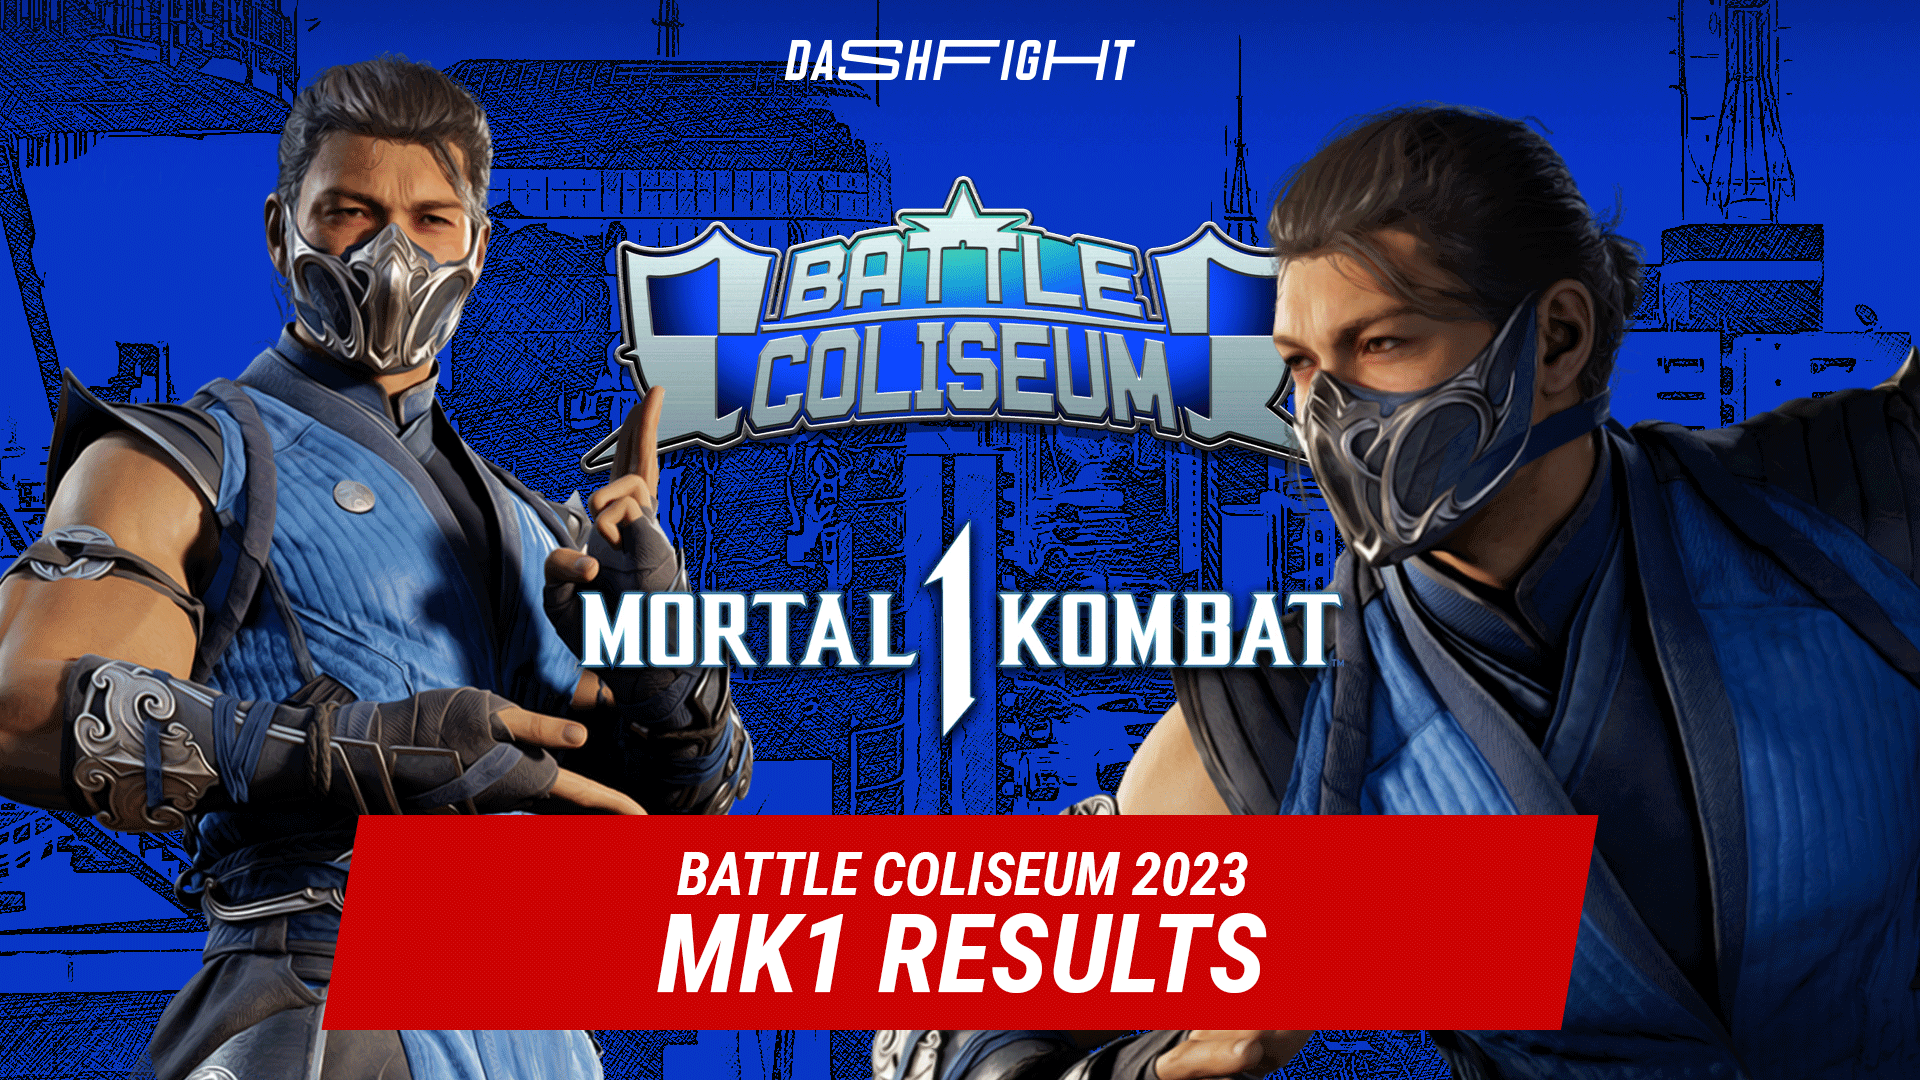 Battle Coliseum 2023 results